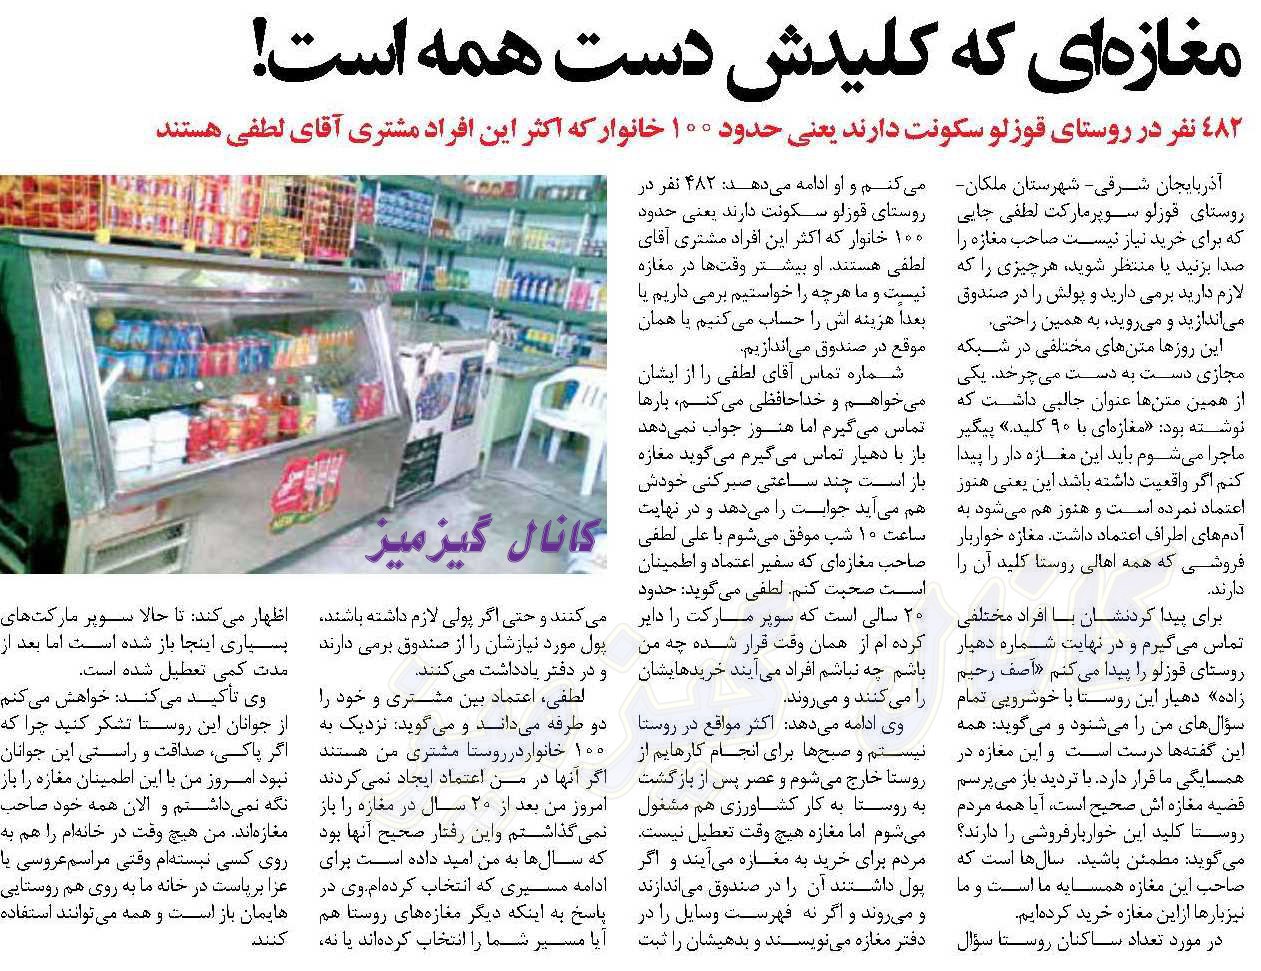 عجیب ترین مغازه دنیا در ایران!(عكس)